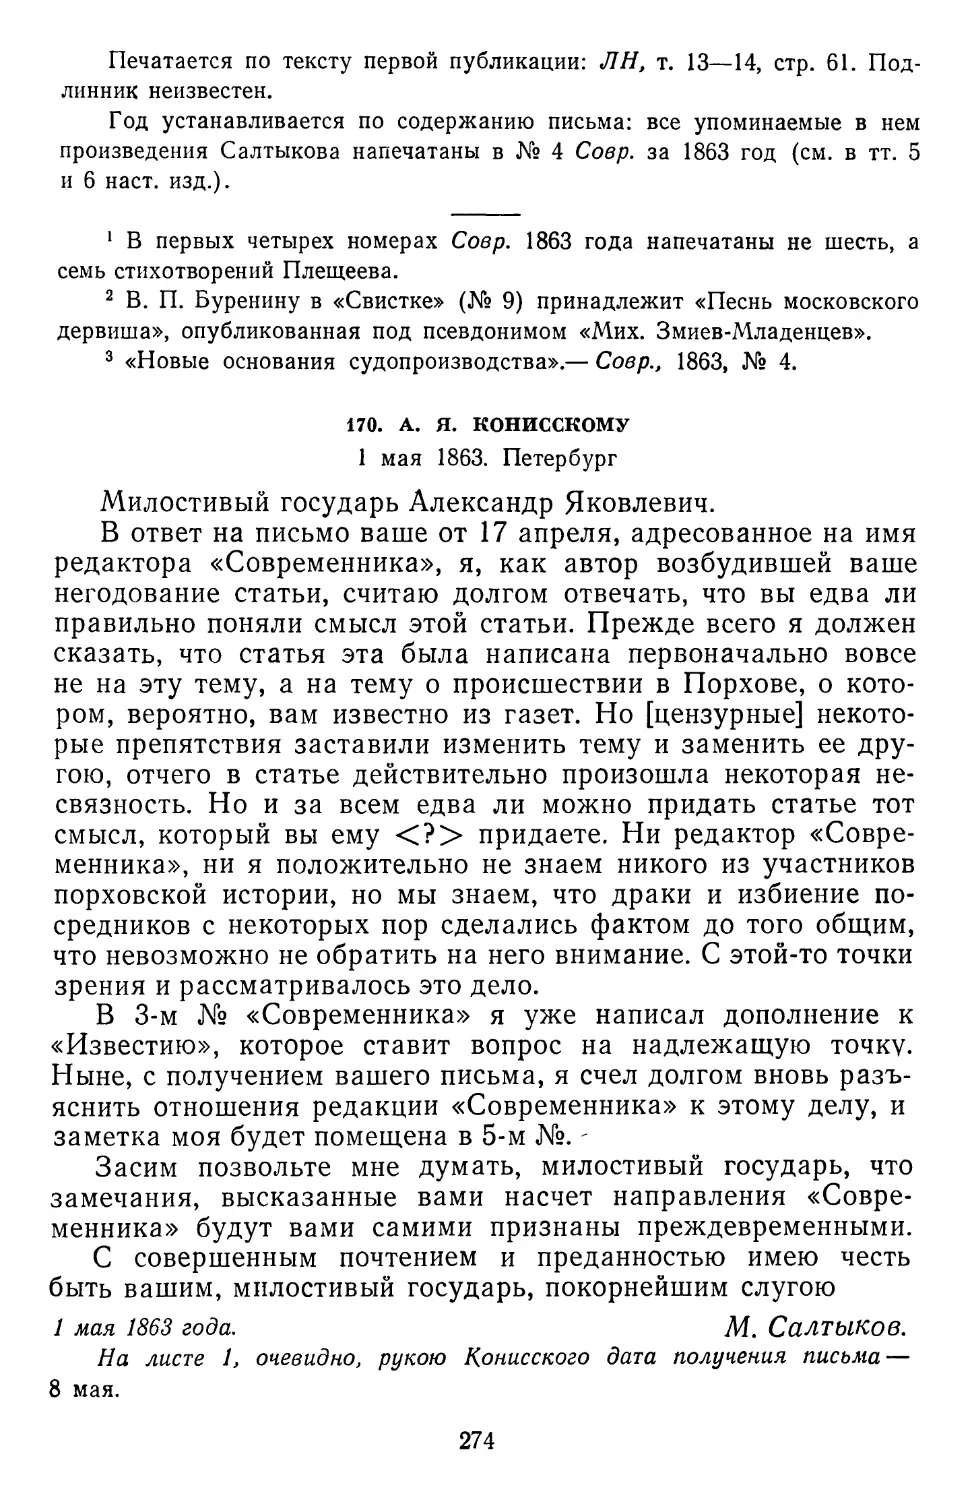 170.А.Я. Конисскому. 1 мая 1863. Петербург